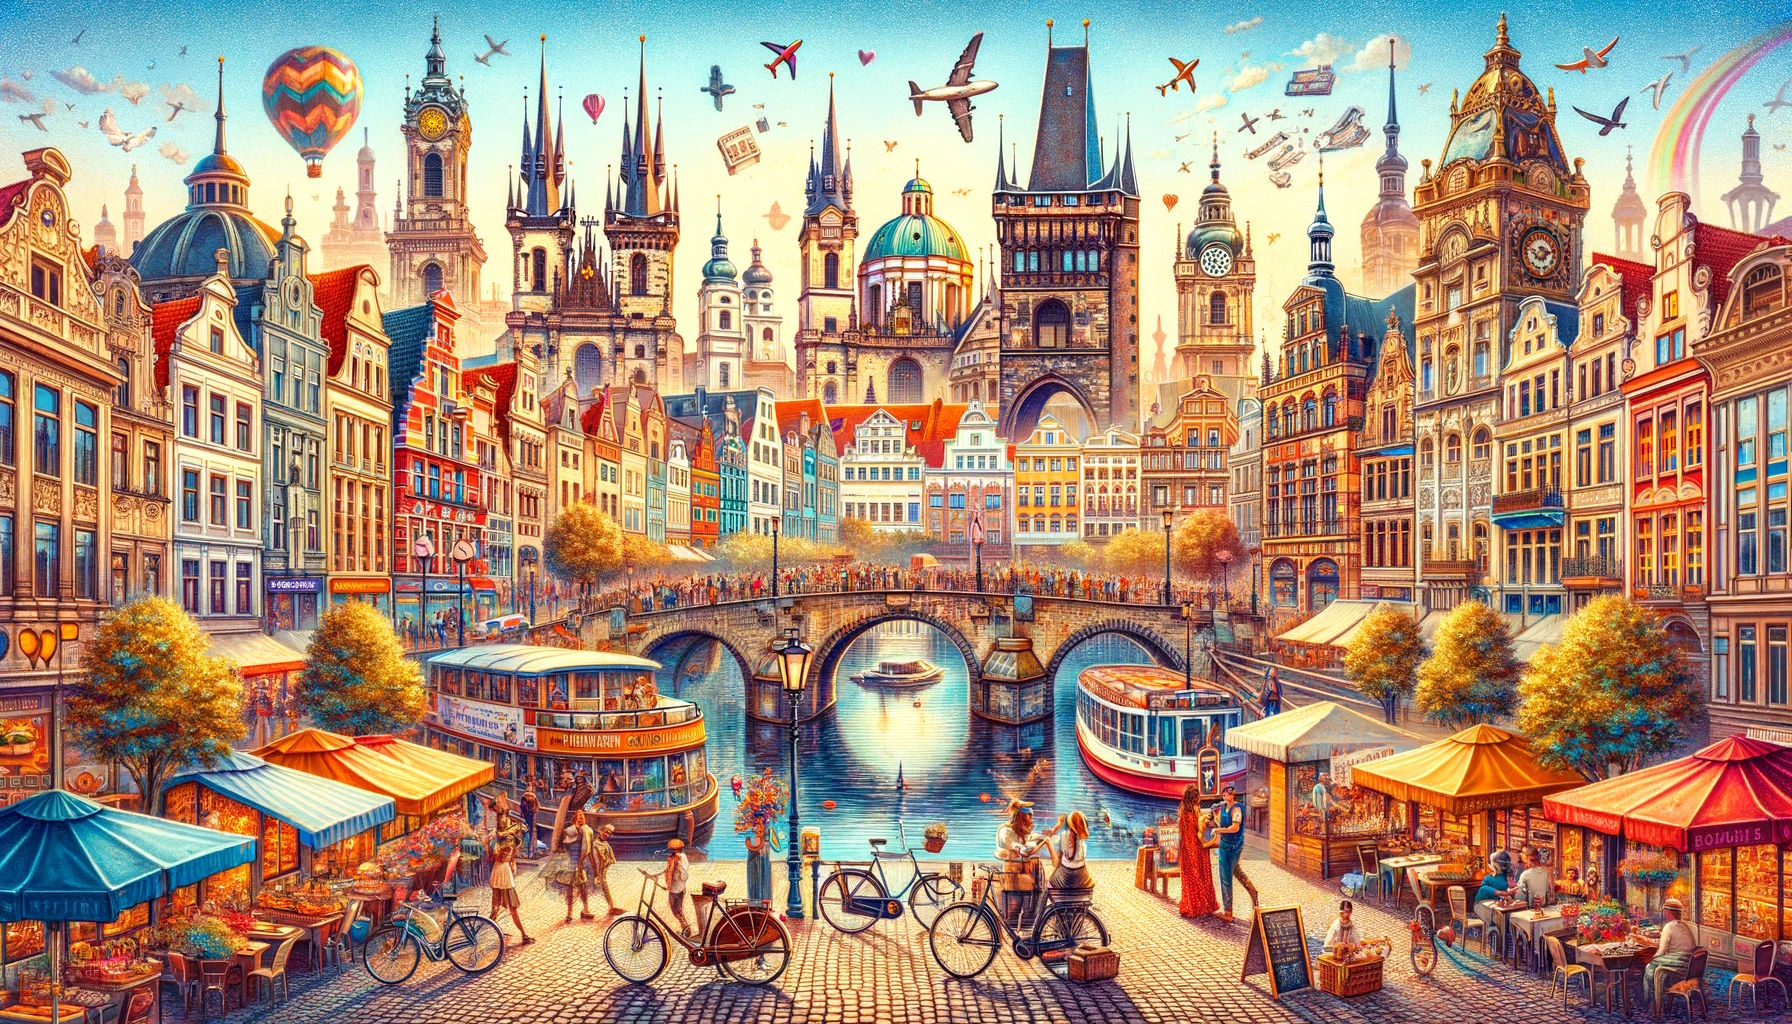 Descubre las ciudades europeas más amadas por los propios europeos para un viaje cultural. De Ámsterdam a Praga, explora los destinos que cautivan con su historia, arte y arquitectura, según Booking.com.